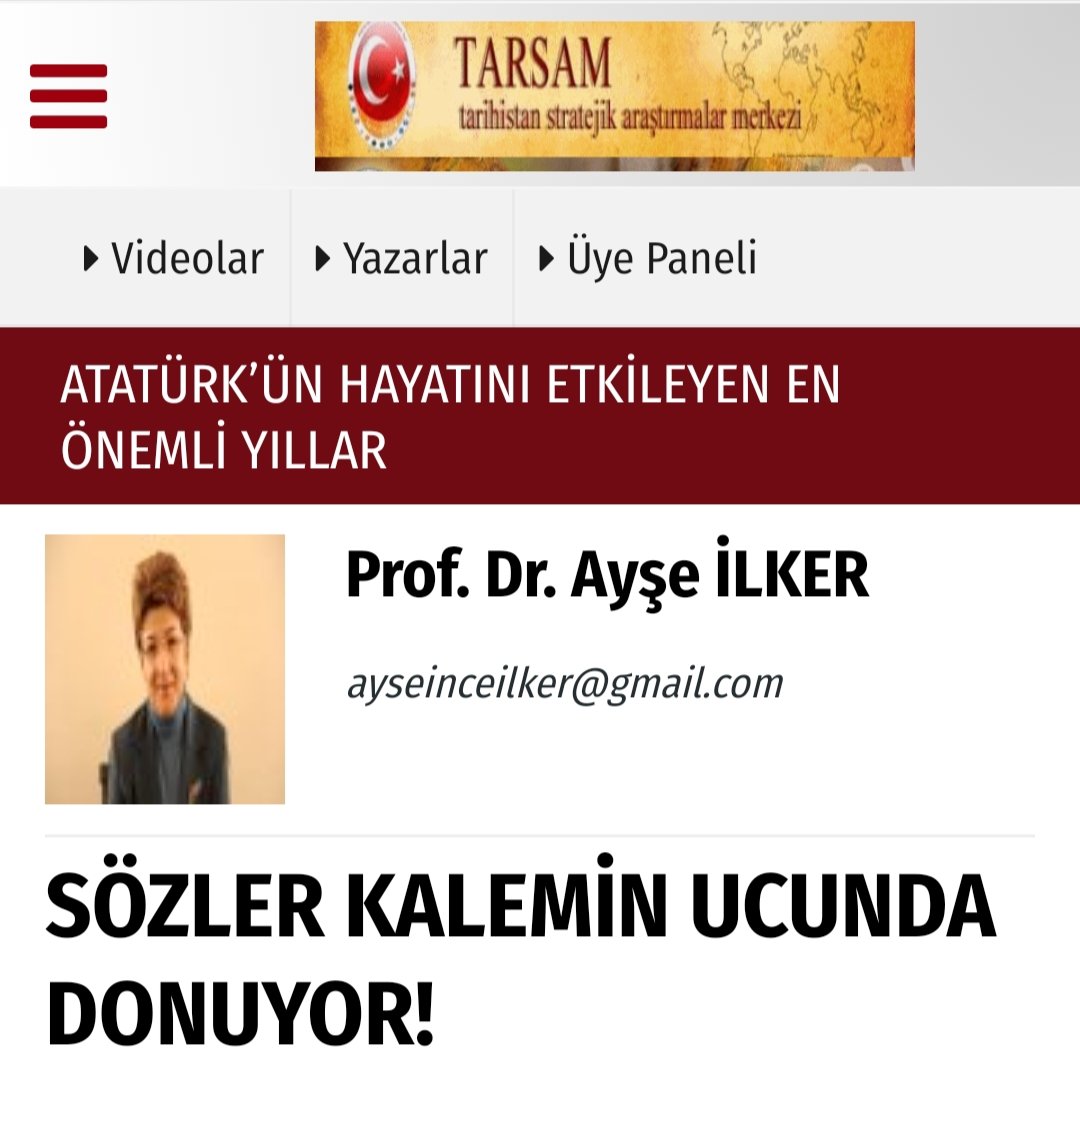 Tarihistan sitesi yazarımız, MCBÜ Öğretim üyesi Prof. Dr. Ayşe İlker'in 'İnsan ve Toplum Bilimleri Fakültesi' Dekanı olarak atanmasını tebrik ederiz.